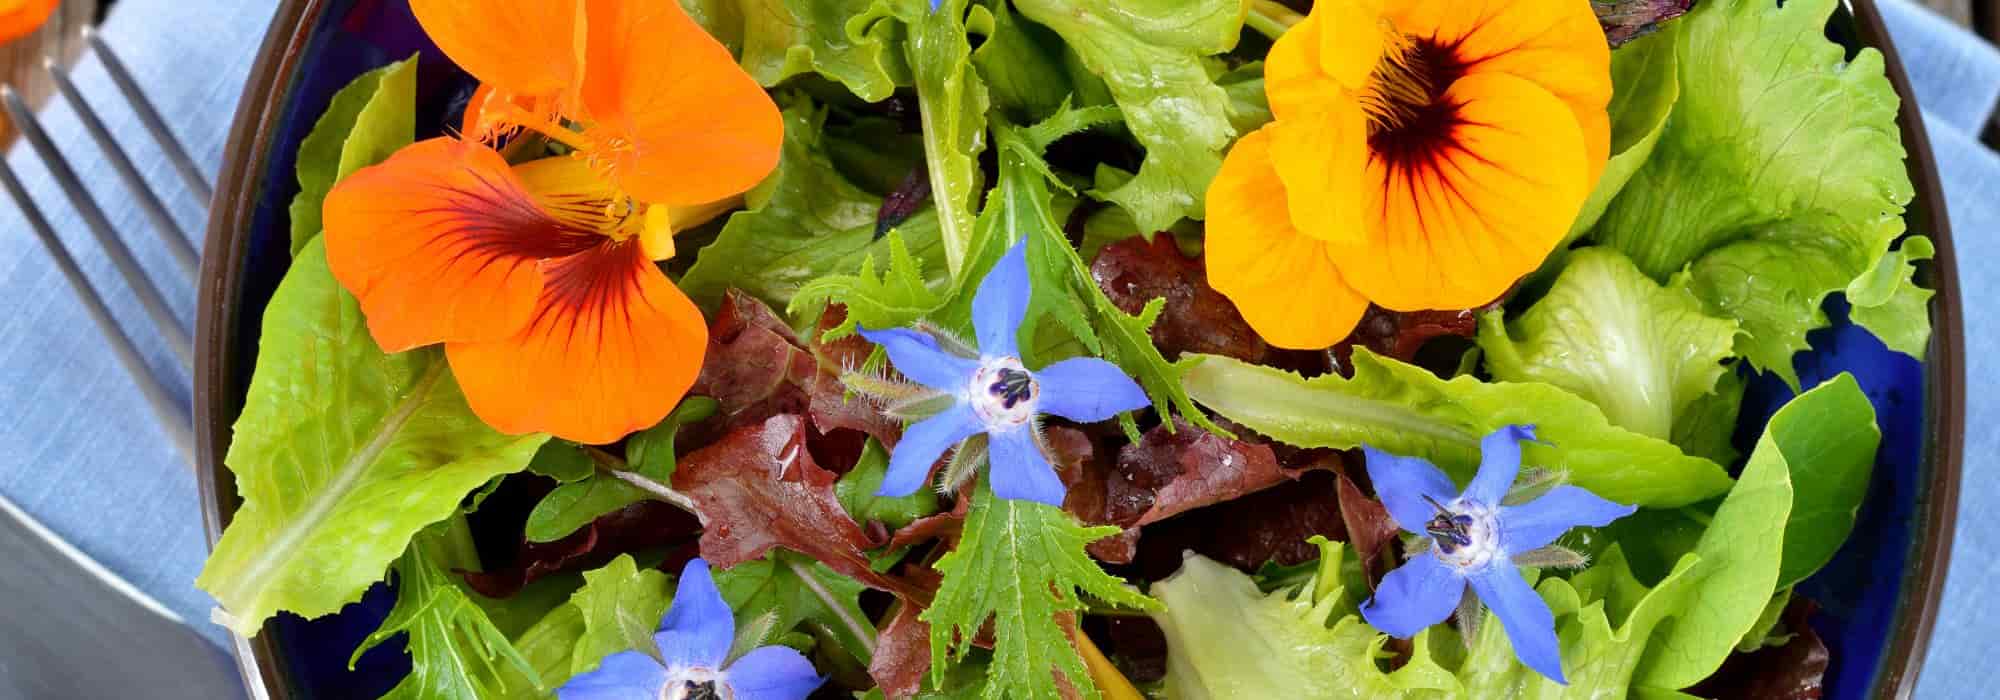 Salades colorées et savoureuses : mettez un peu de fantaisie dans votre assiette !